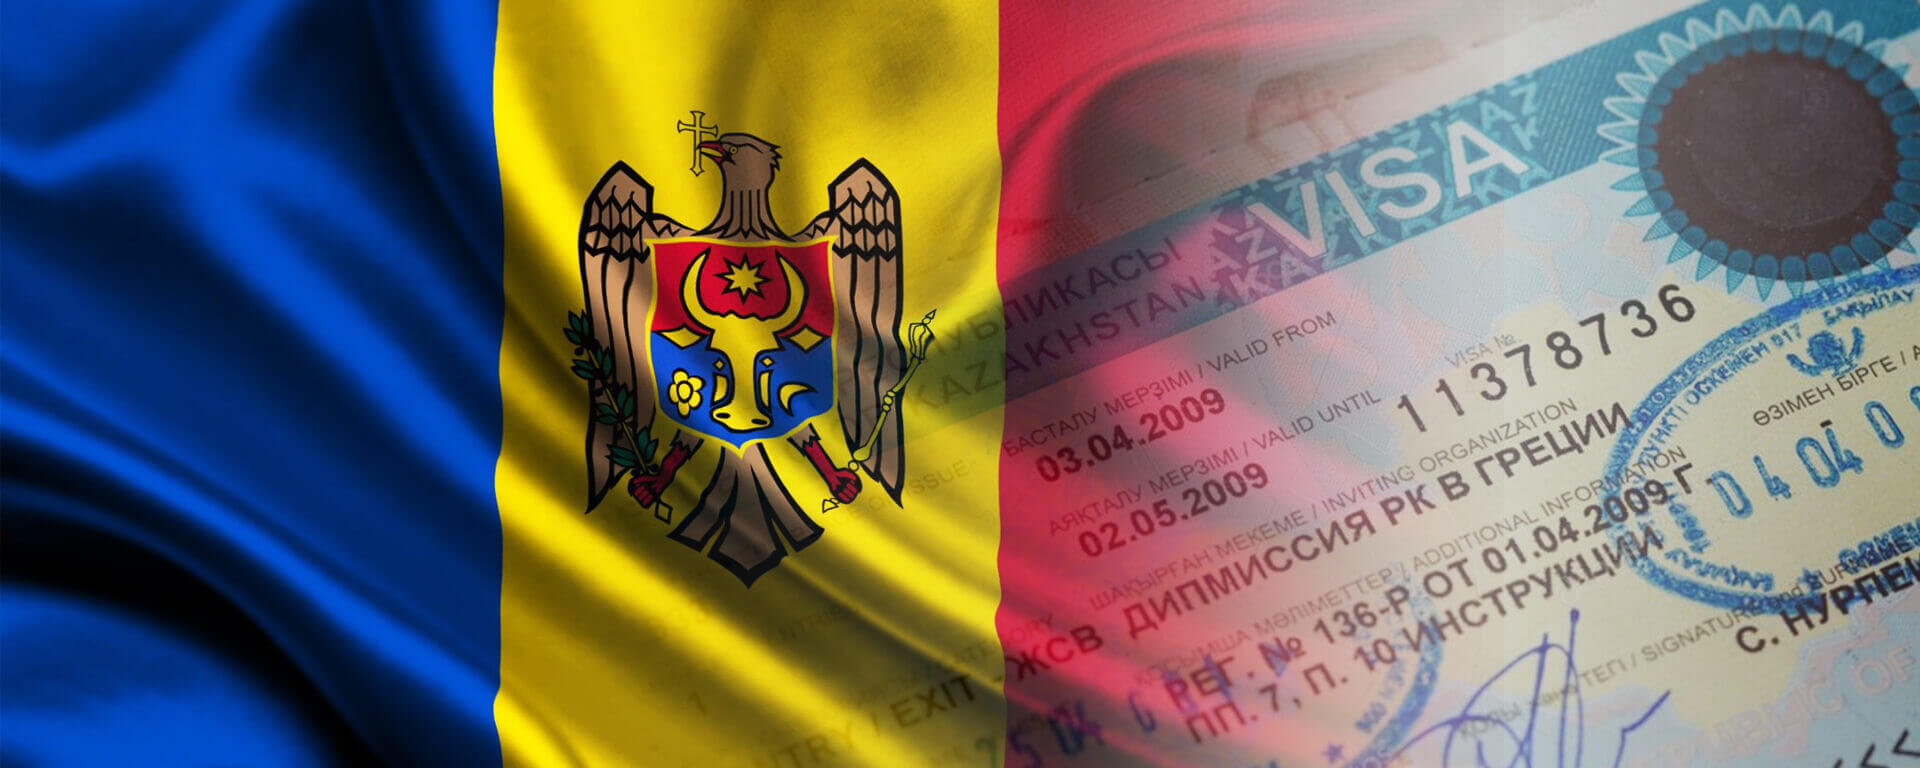 moldova tourist visa